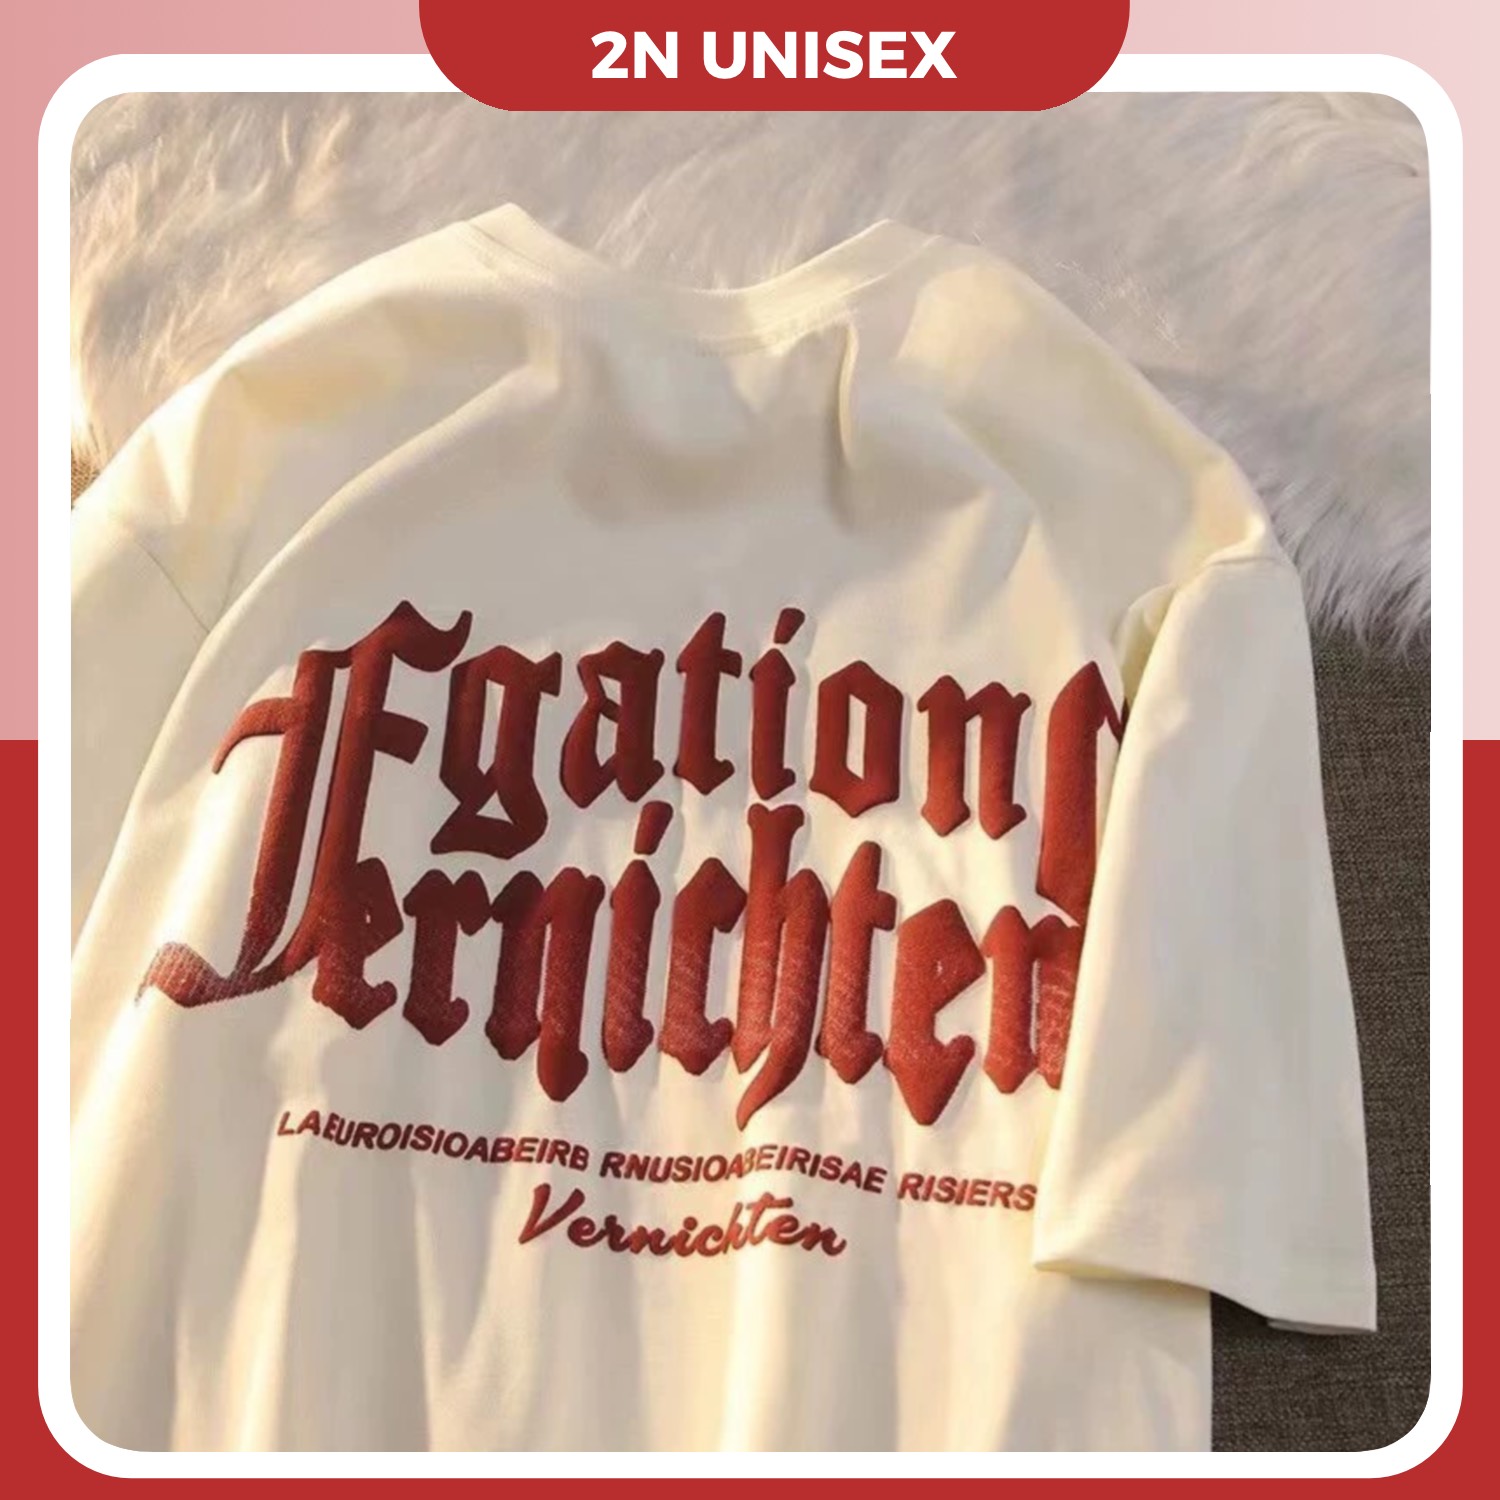 Áo thun tay lỡ form rộng - phông nam nữ cotton oversize - T shirt chữ in nổi - 2N Unisex